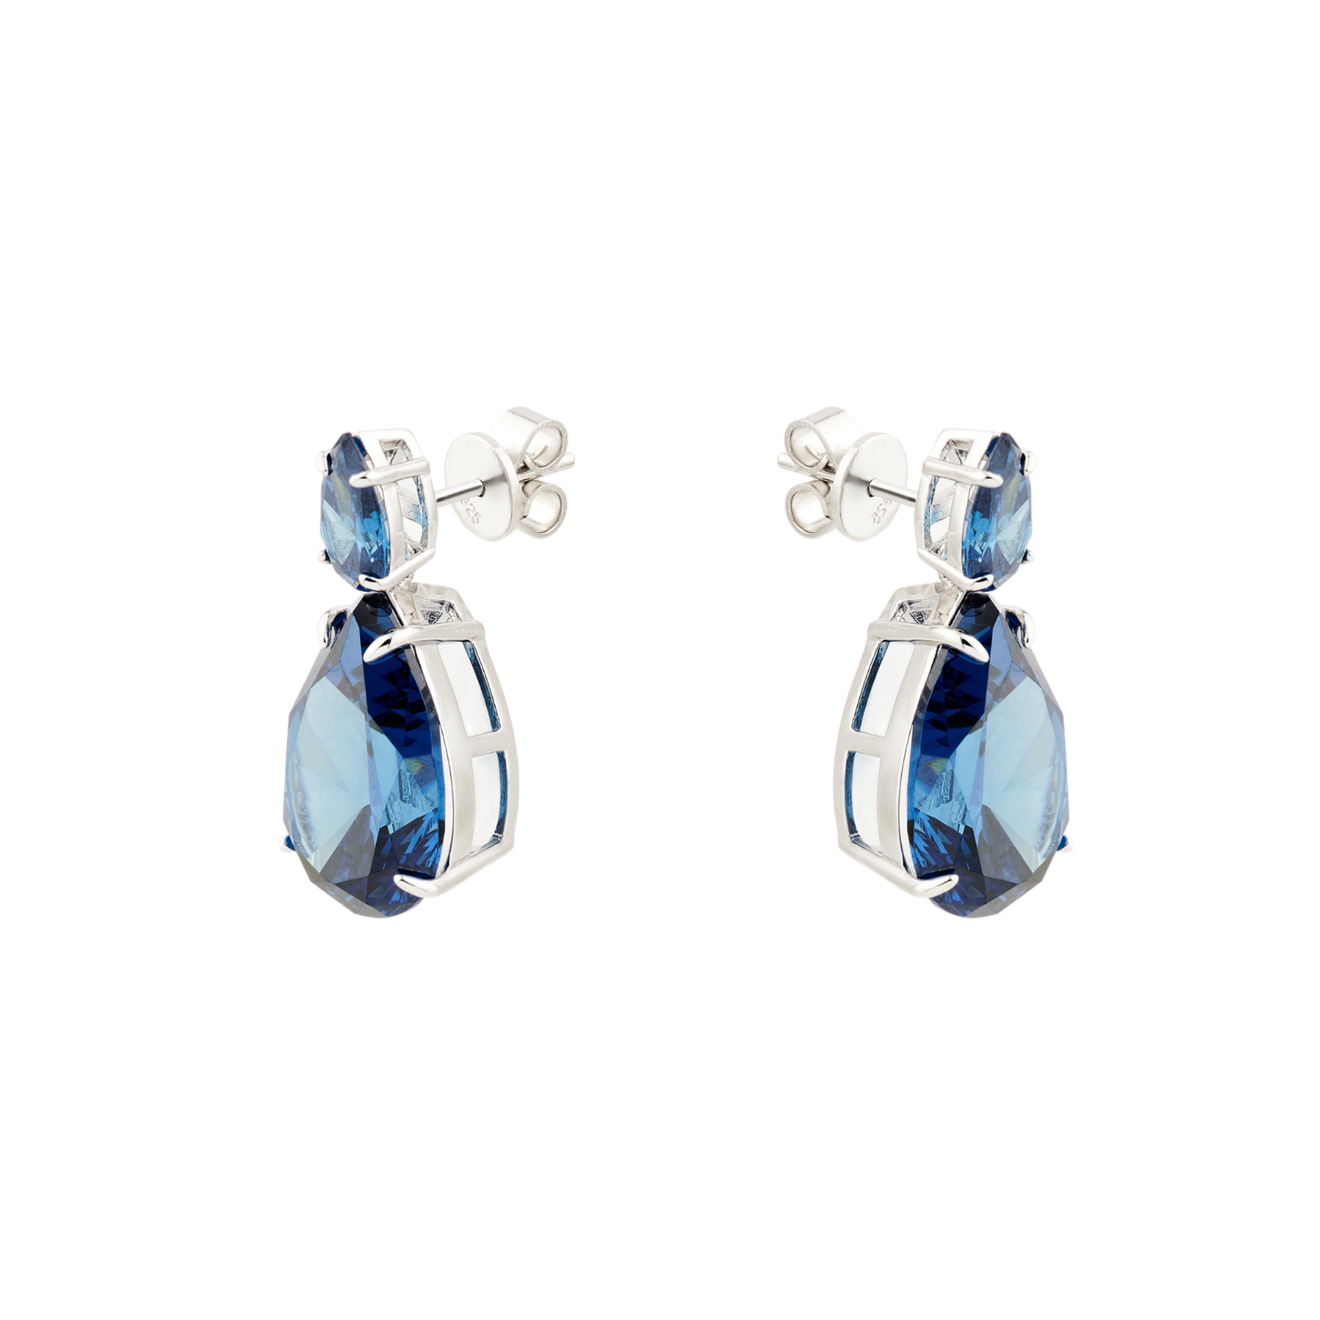 Holy Silver Двойные серебряные серьги-груша с синими кристаллами